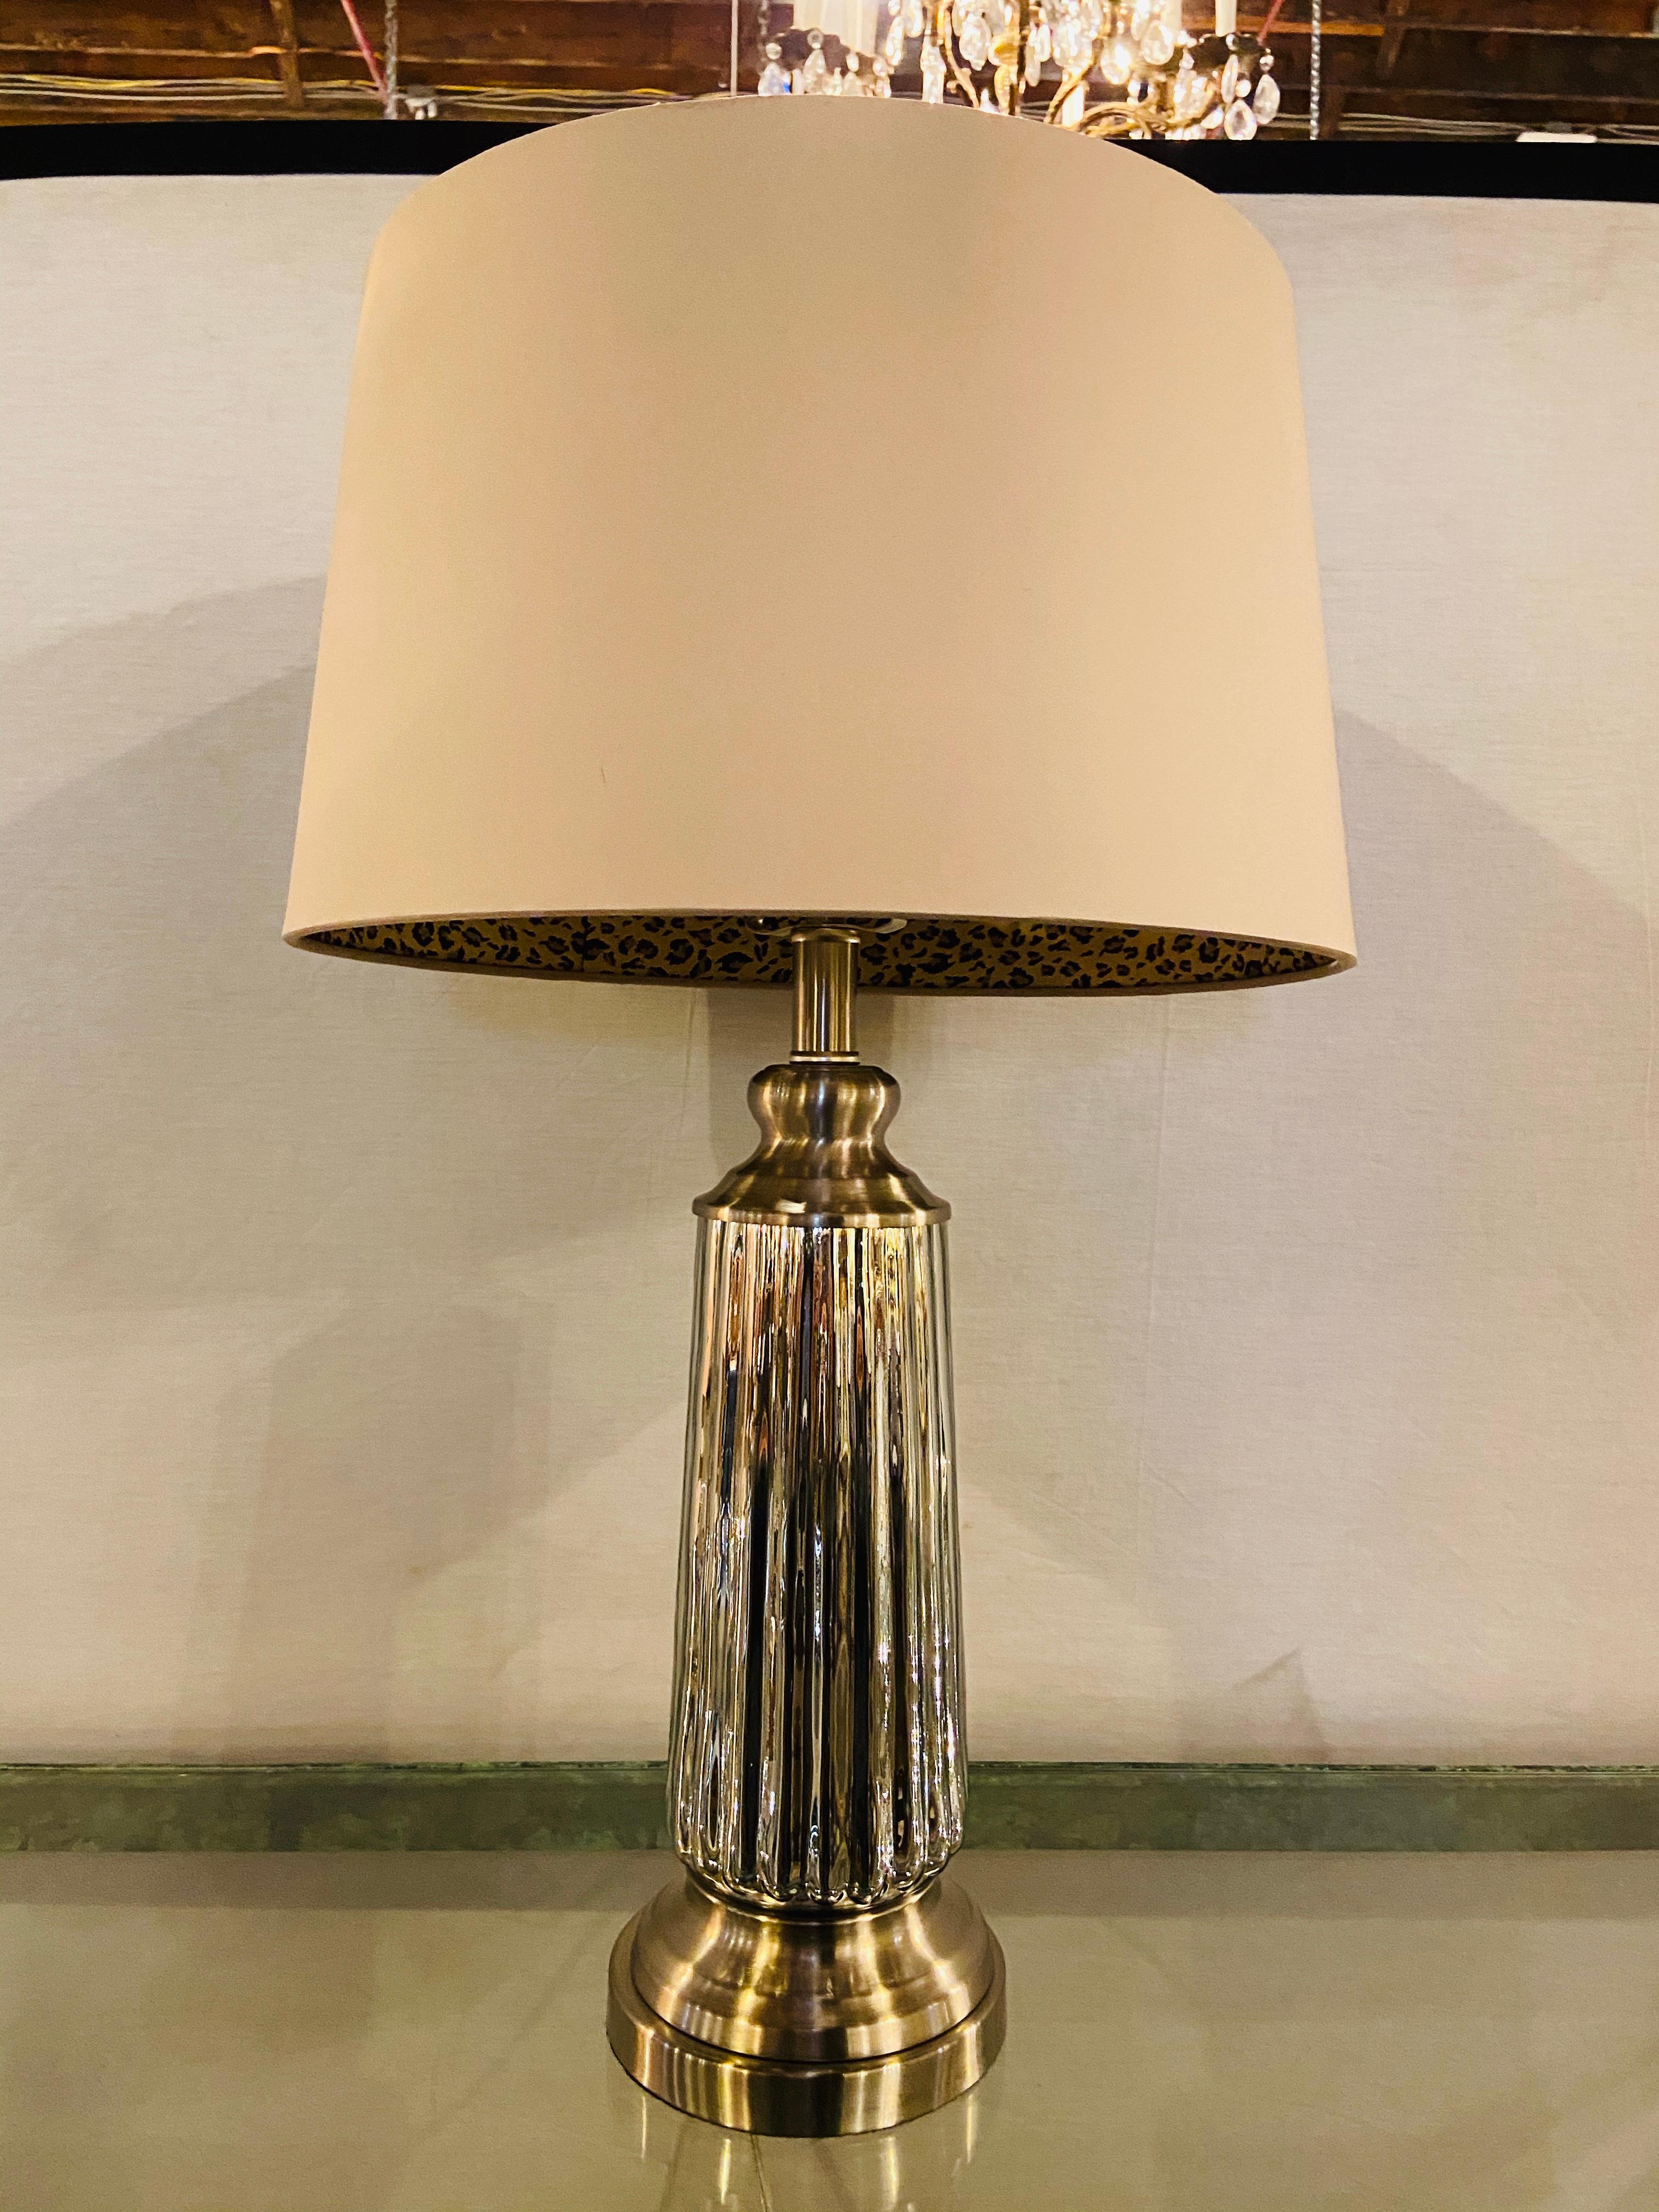 Eine schlichte und schicke Tischlampe im Mid Century Modern Stil.  Die silberfarbene Lampe hat ein geripptes Design und ist mit einem individuellen Schirm verziert  innenausstattung mit Leopardenmuster.

Abmessungen:
Lampe ist 26